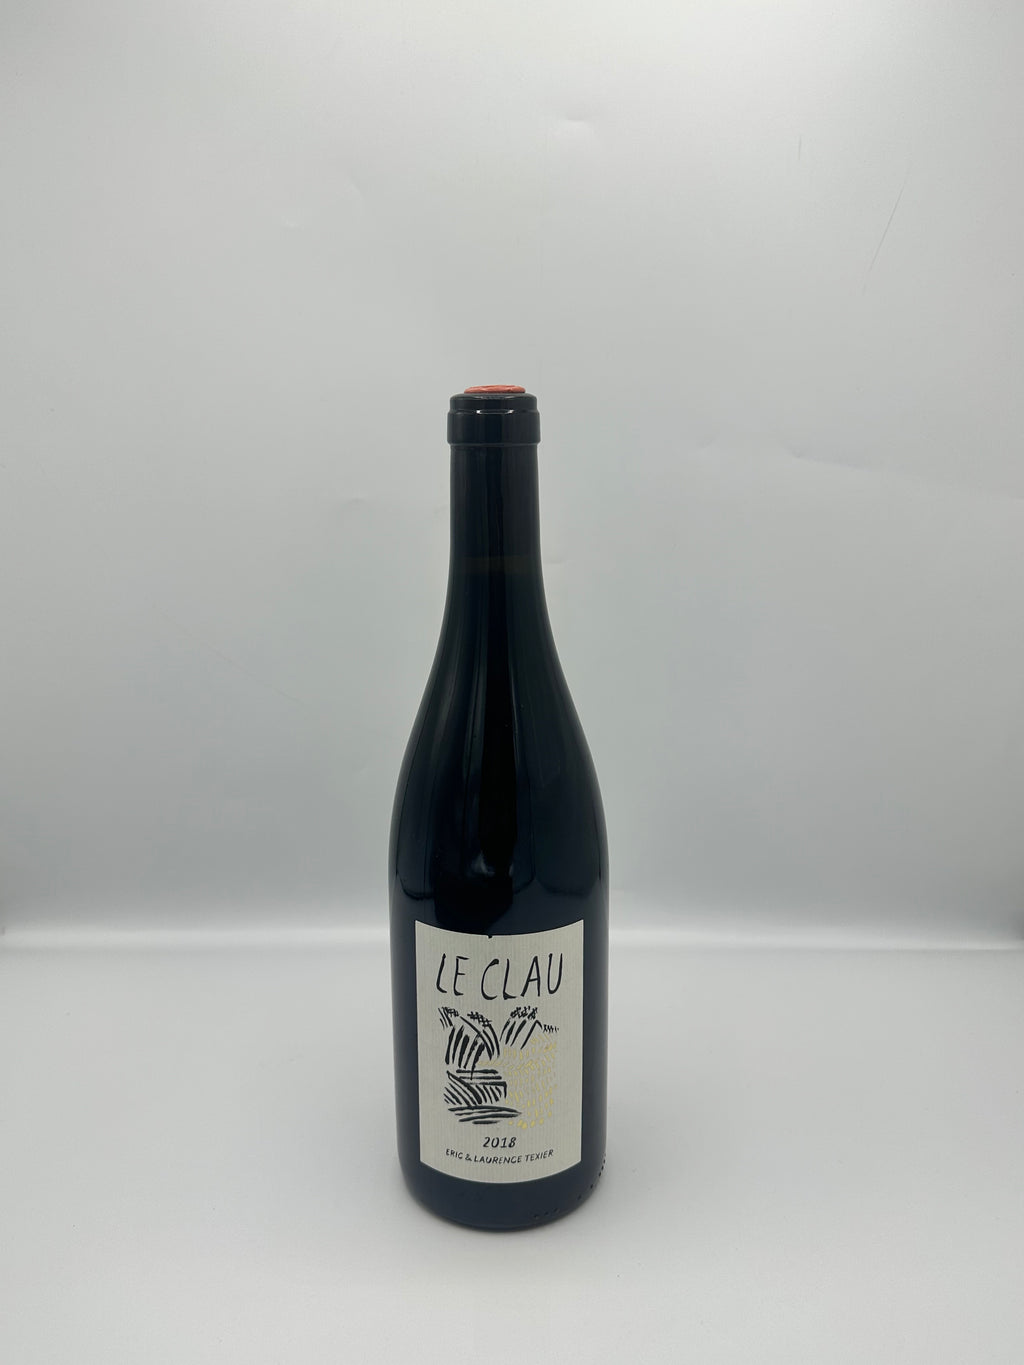 Côtes du Rhone “Le Clau” 2018 Tinto - Eric Texier 